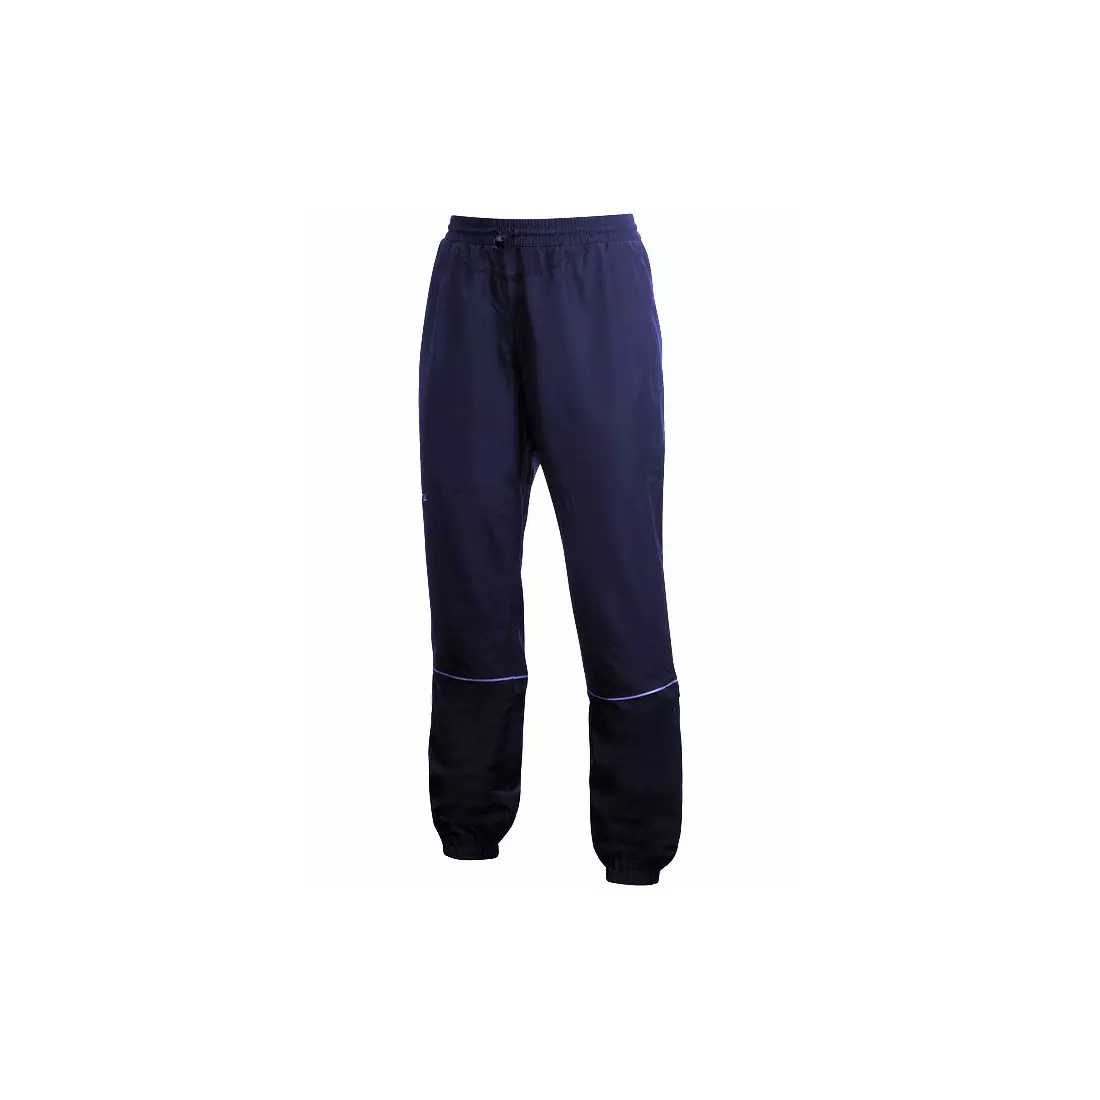 CRAFT ACTIVE - dámské běžecké kalhoty 194172-1395